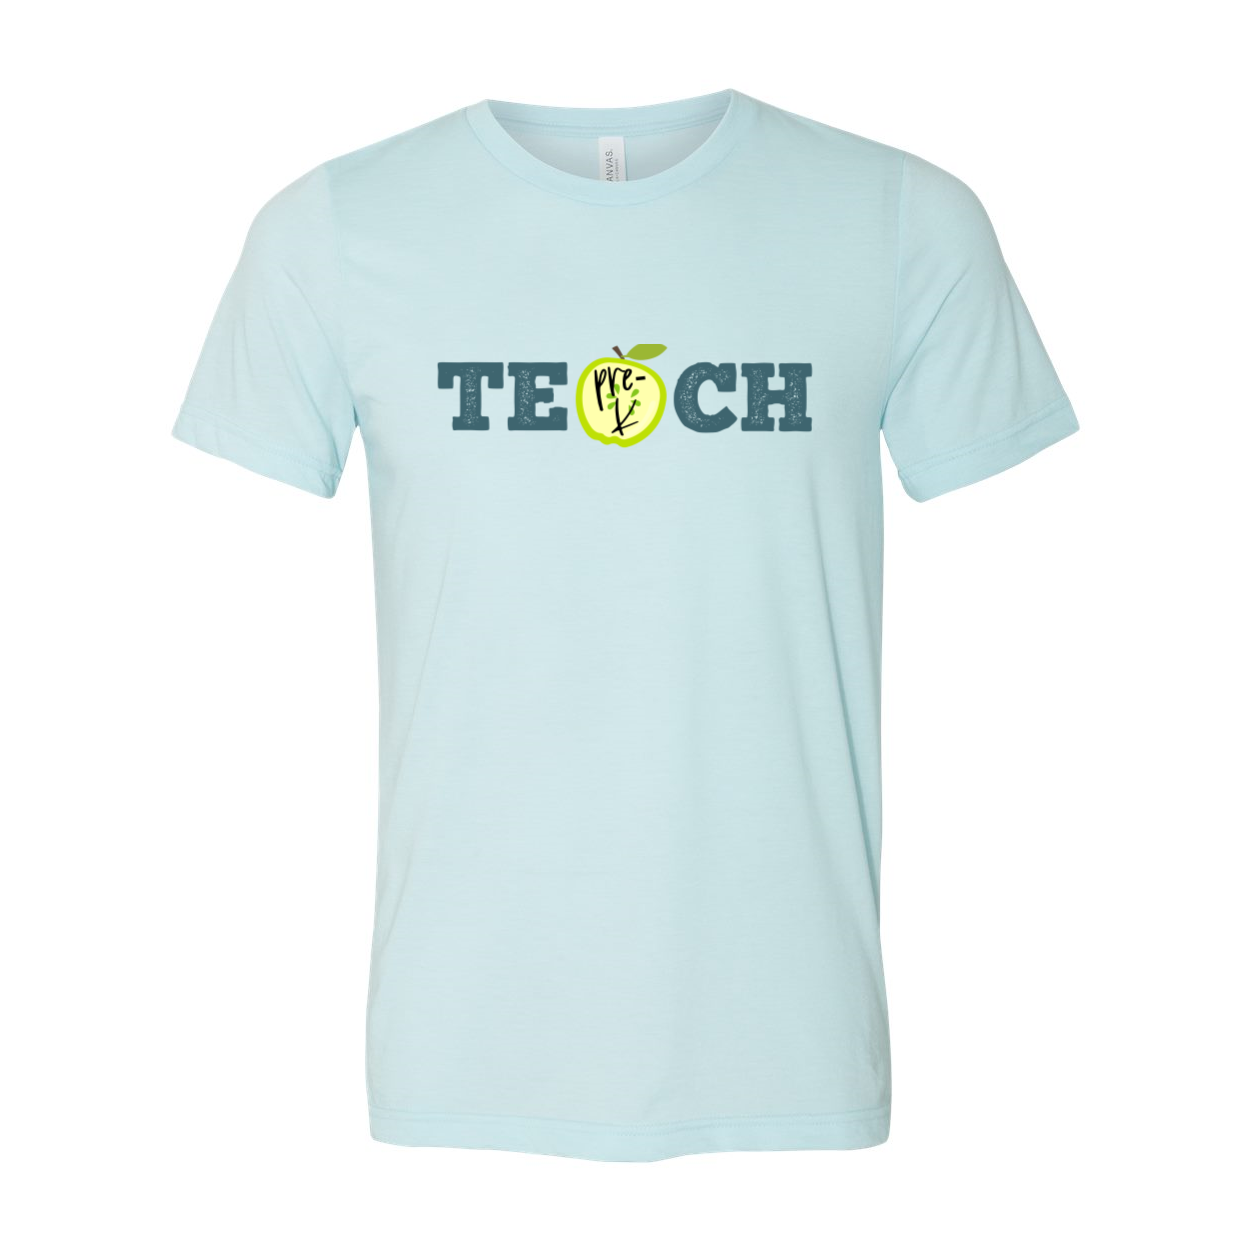 Pre-K TEACH T-Shirt